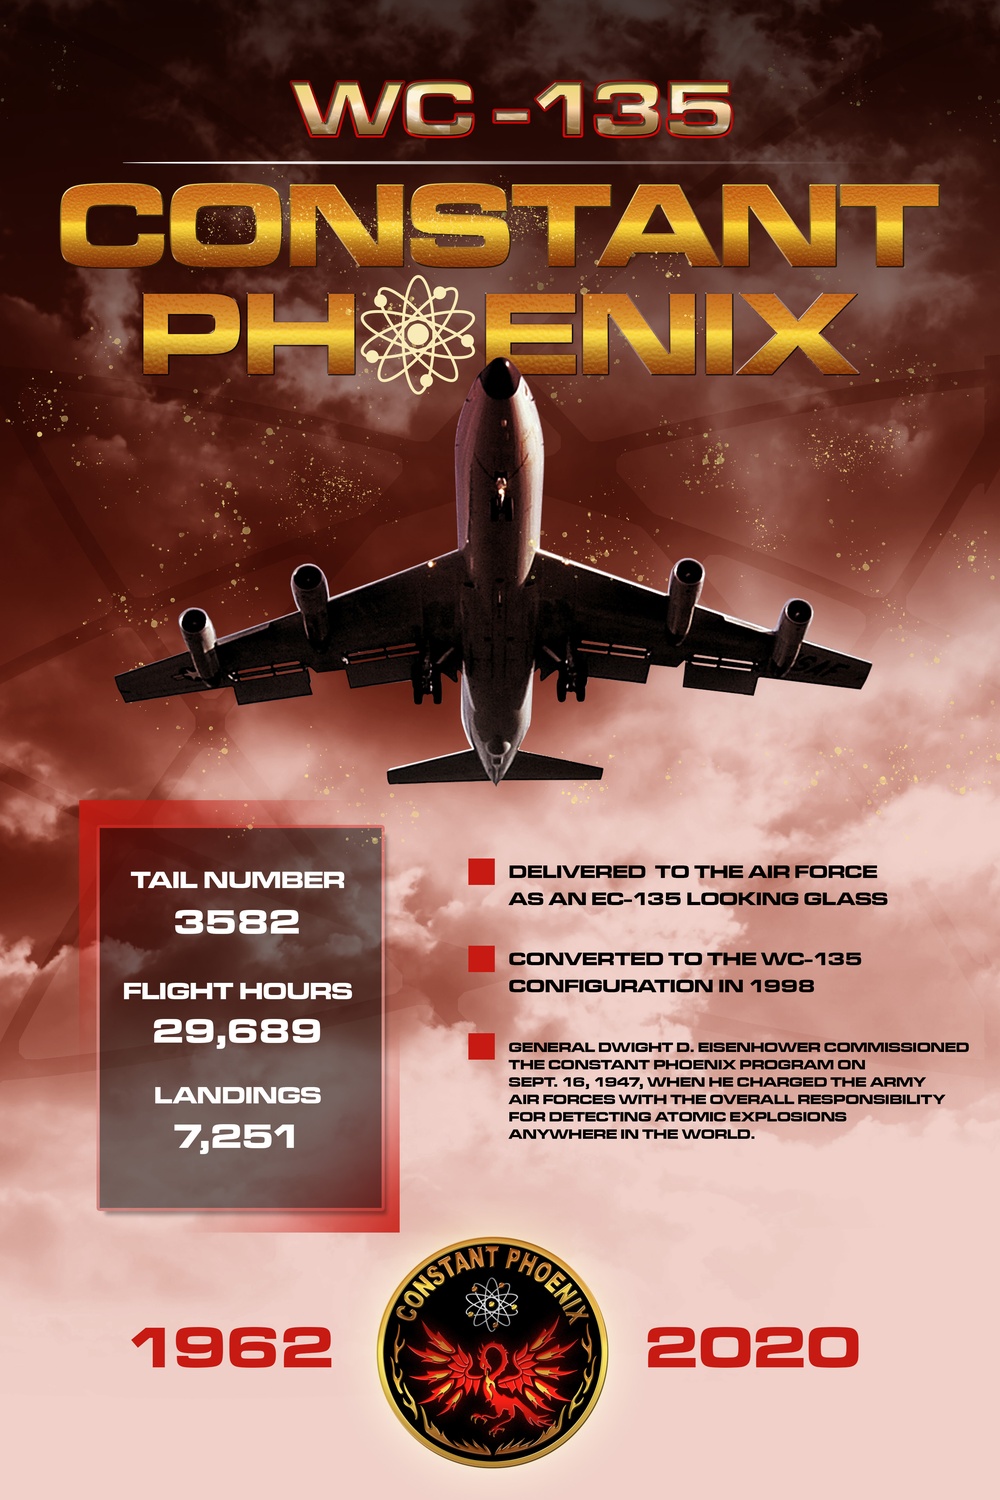 Contant Phoenix retirement